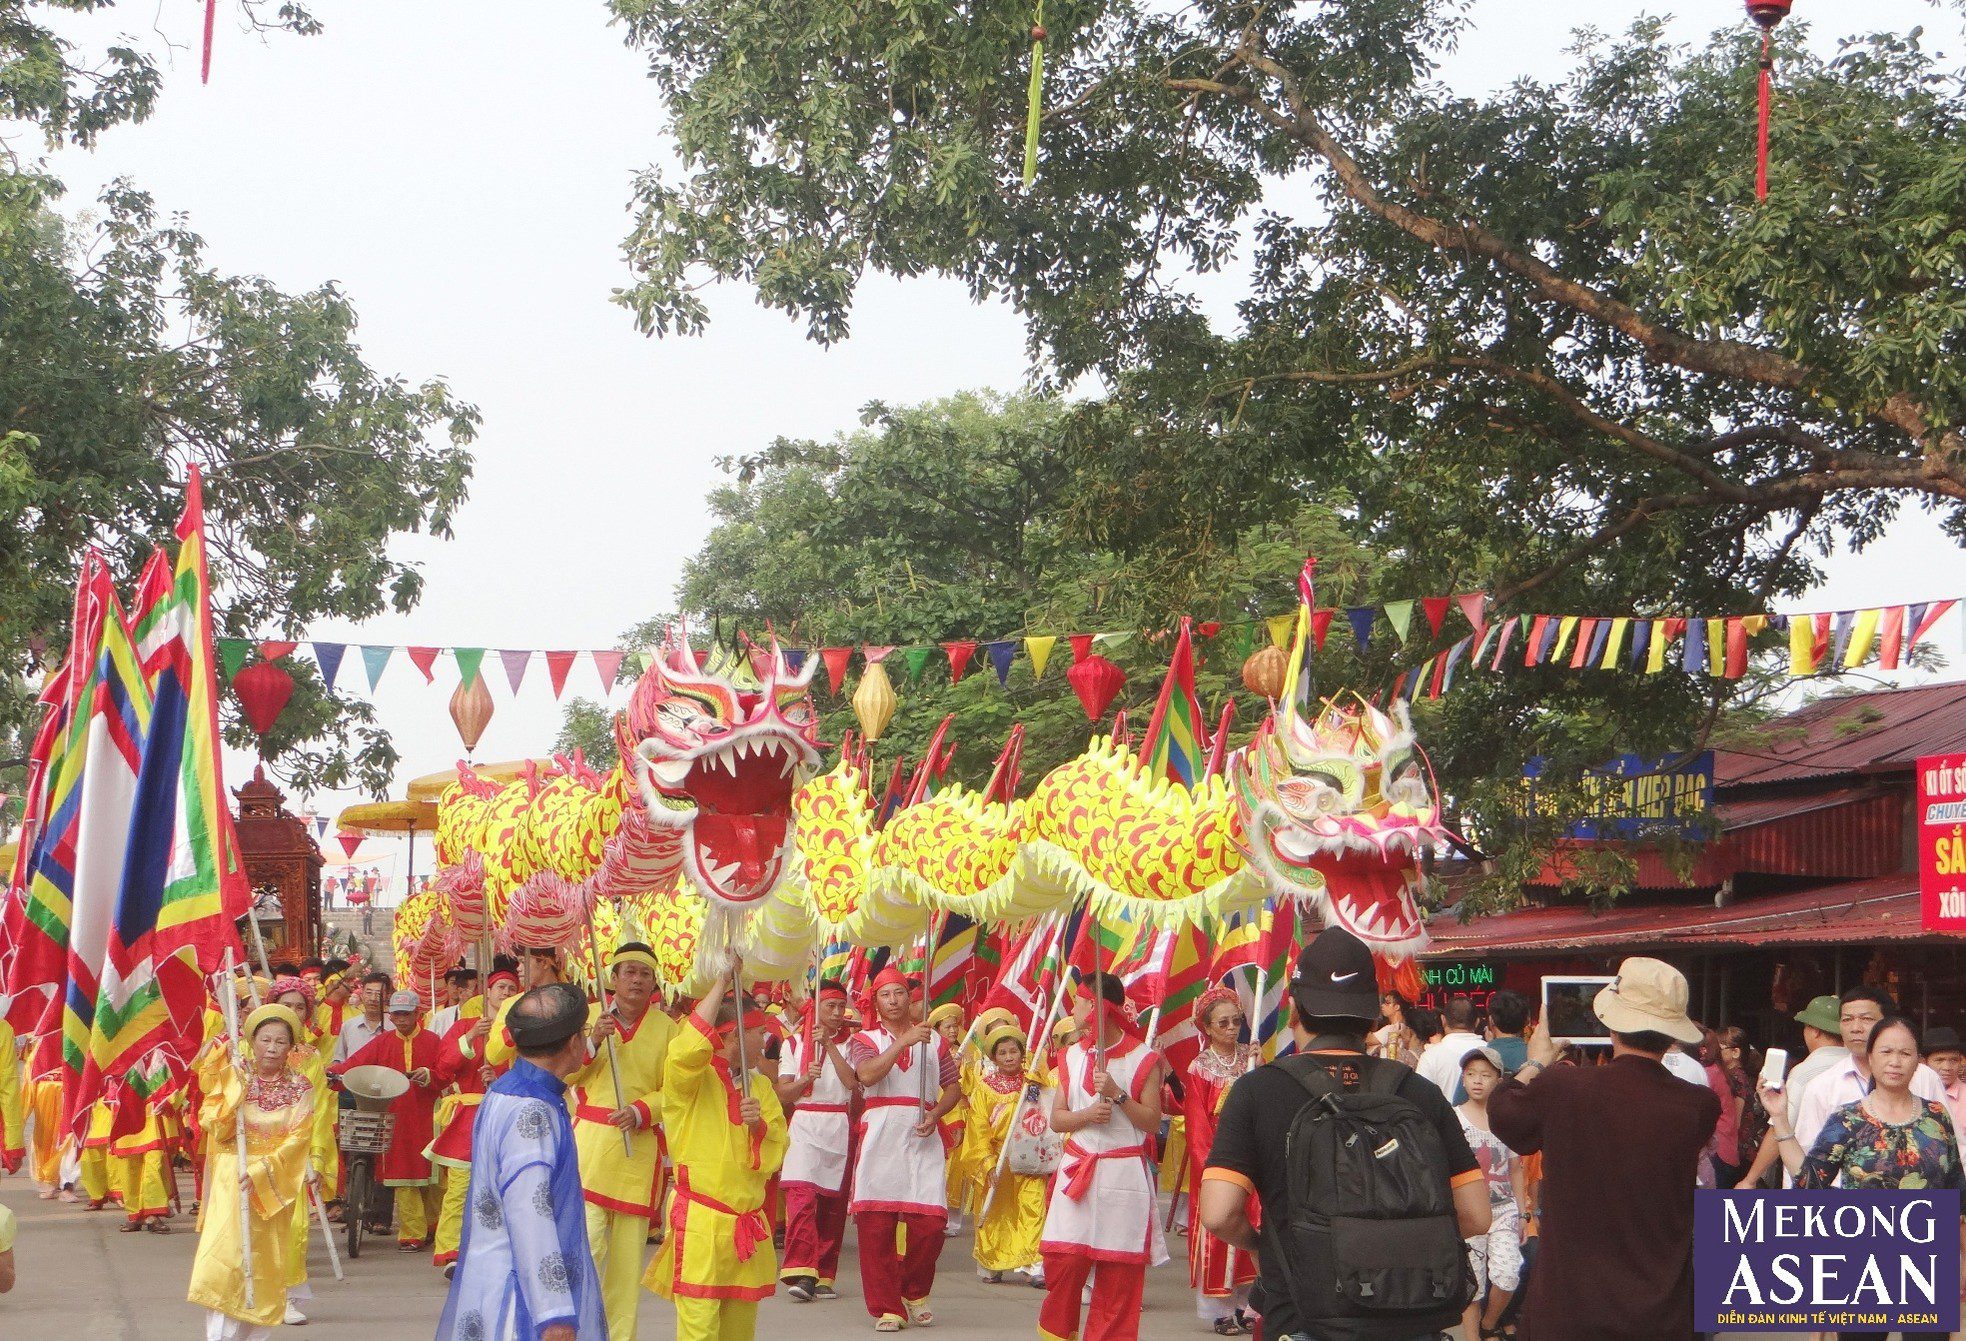  Hướng về Lễ hội mùa thu Côn Sơn - Kiếp Bạc ở Hải Dương ảnh 4